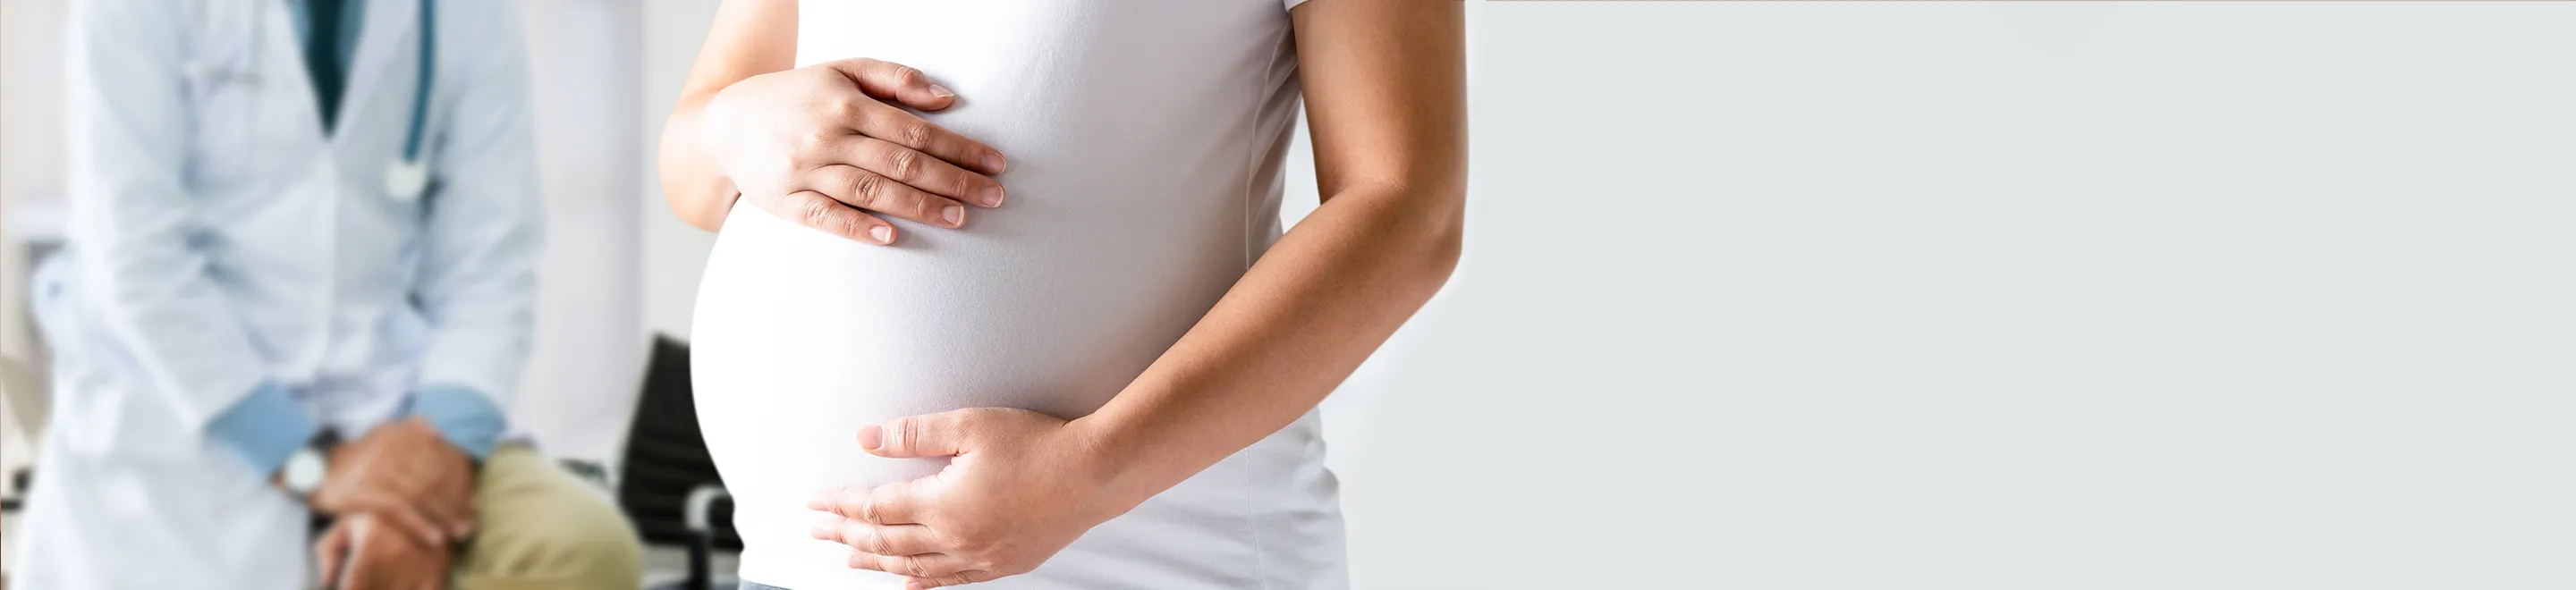 Eine schwangere Frau hält die Hände auf ihrem große Bauch, im Hintergrund sitzt ein Arzt.